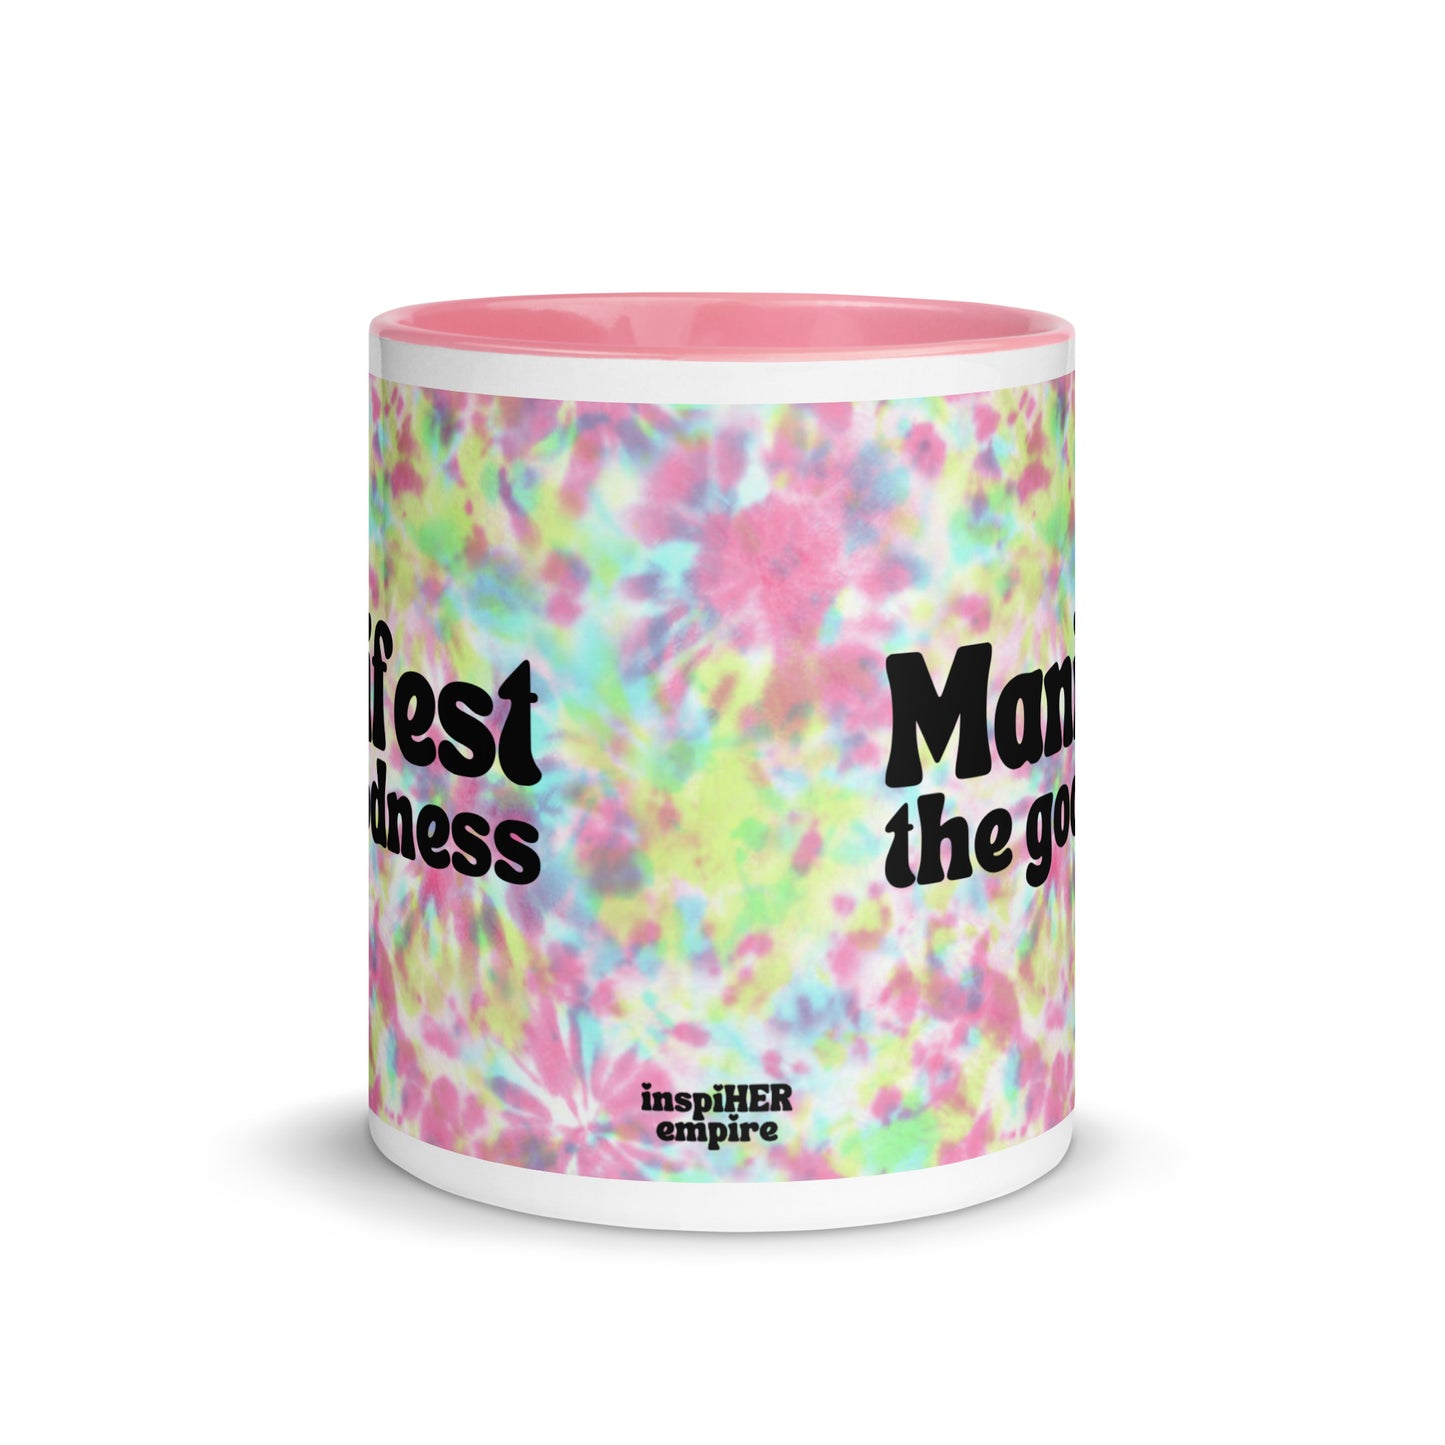 Manifest the Goodness Mug